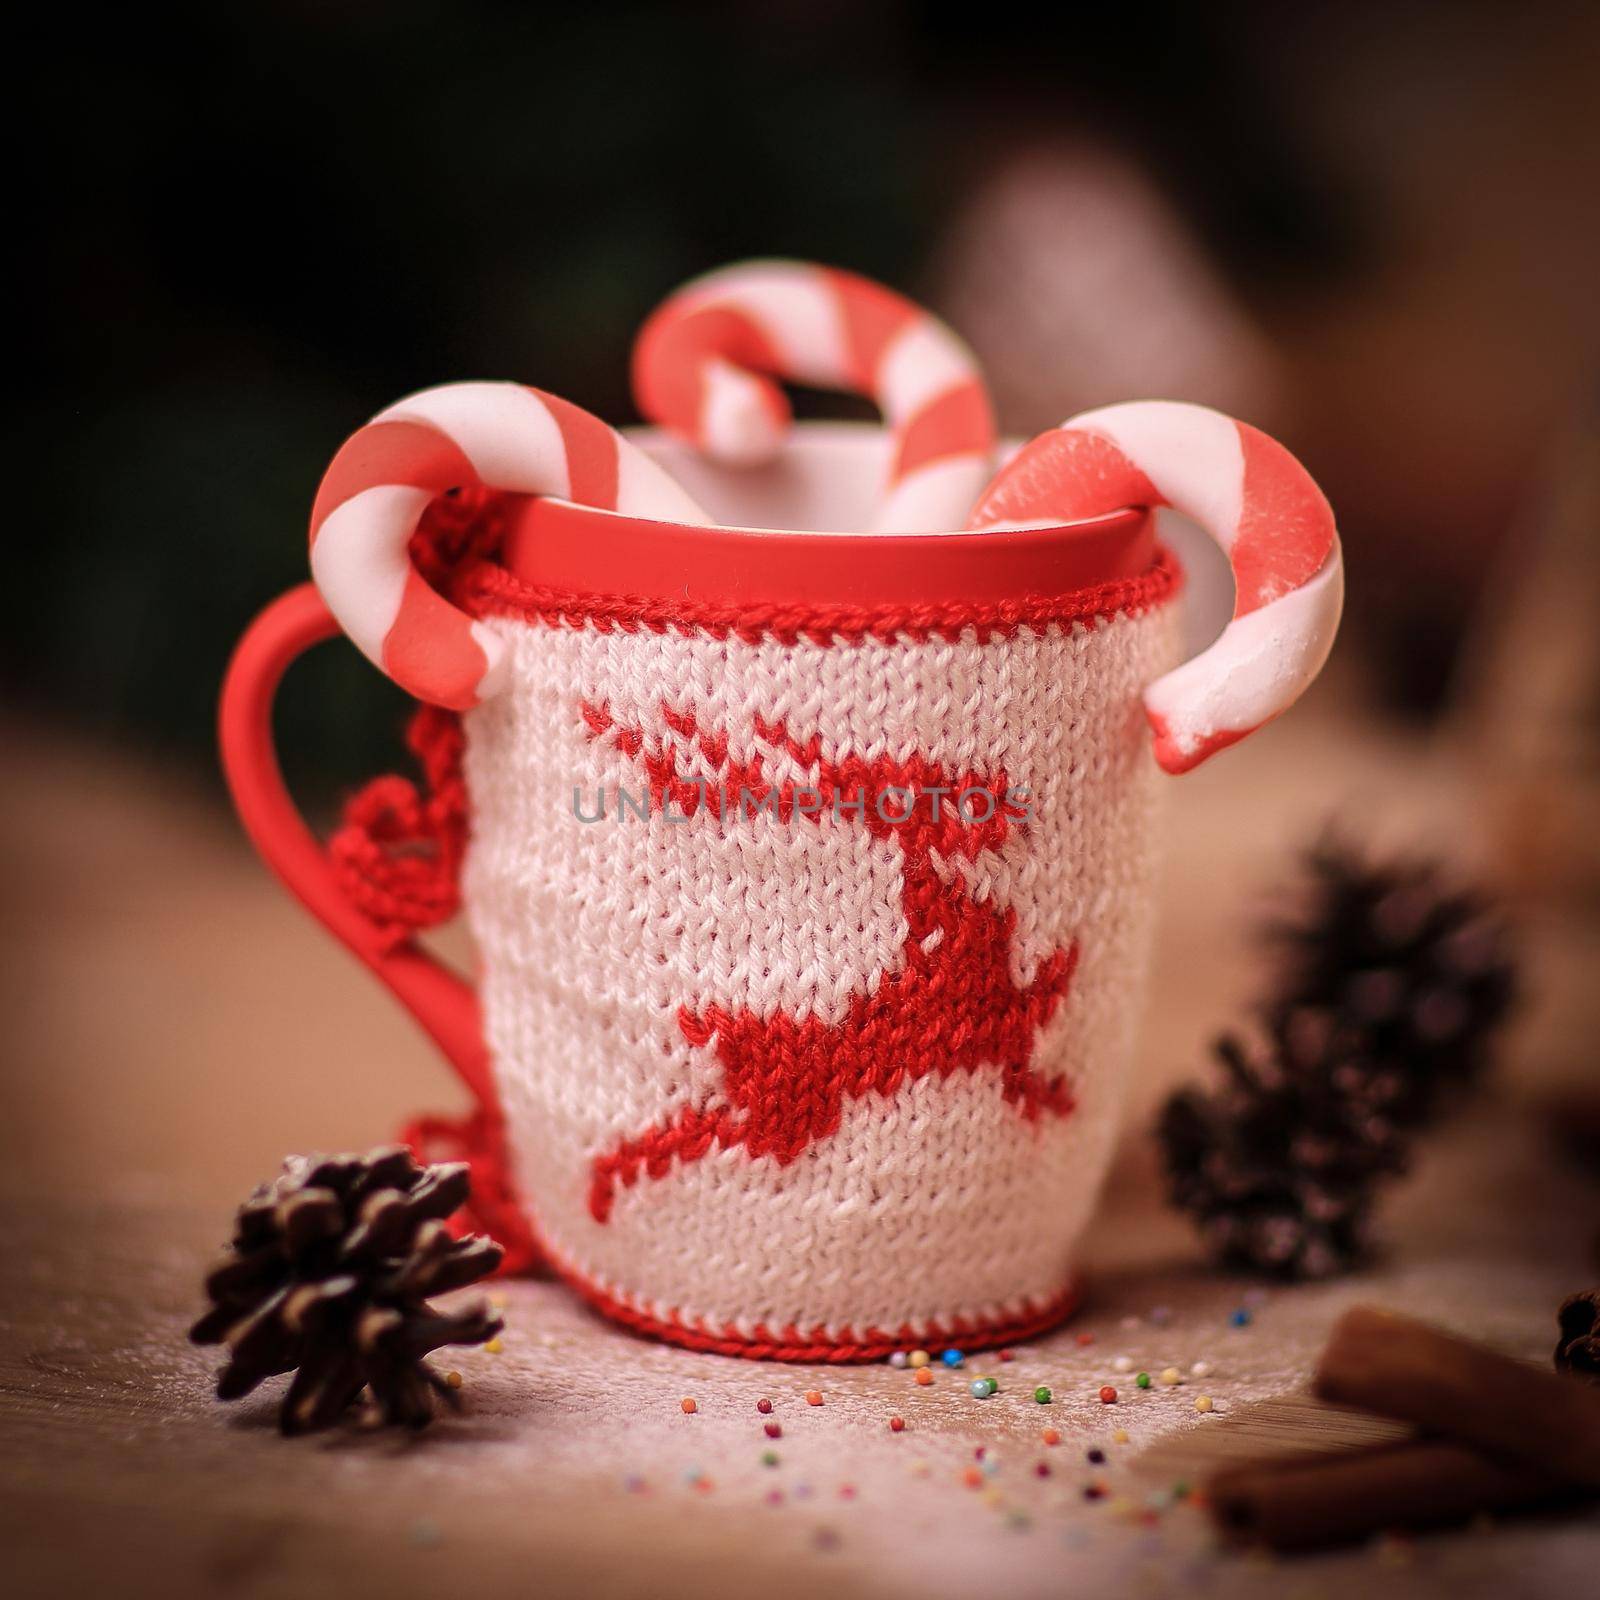 blurred image of Christmas mug and cinnamon sticks on wooden ba by SmartPhotoLab